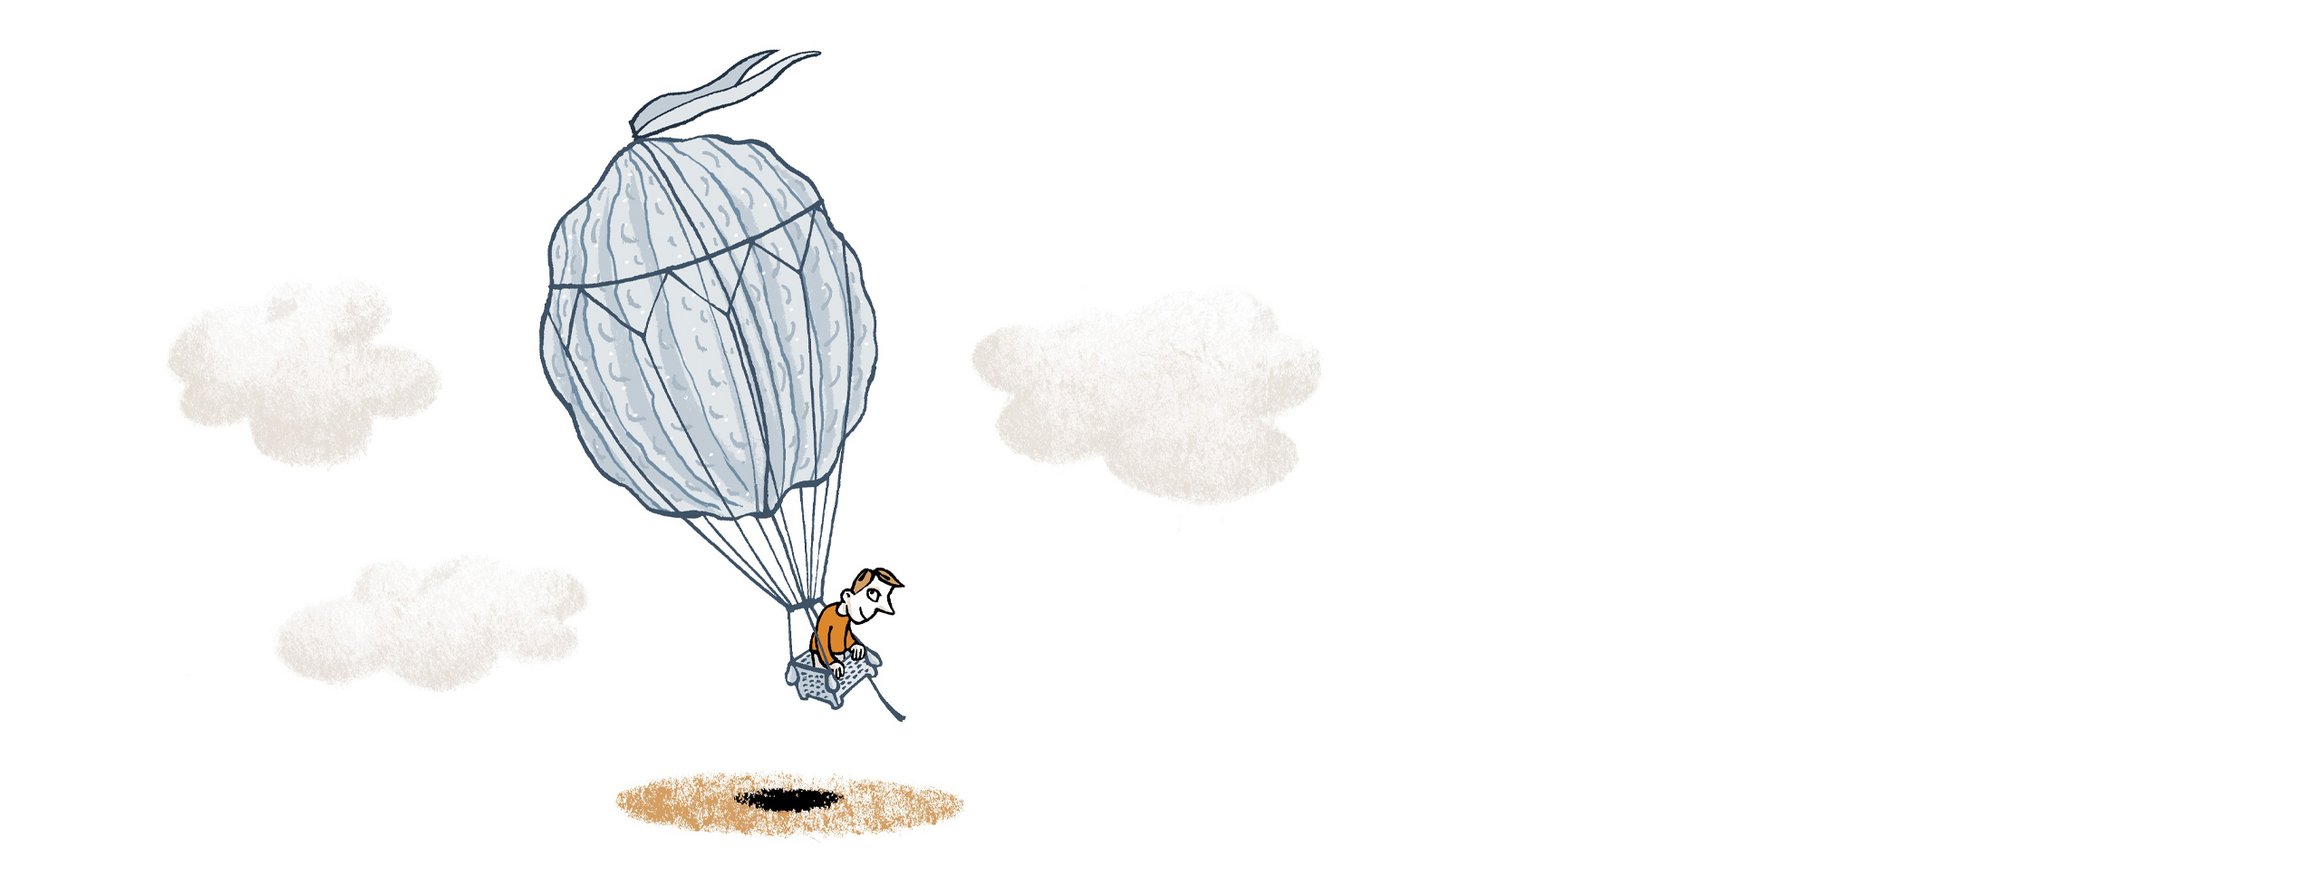 Die Illustration zeigt einen Mann in einem Heißluftballon in Form einer Walnuss